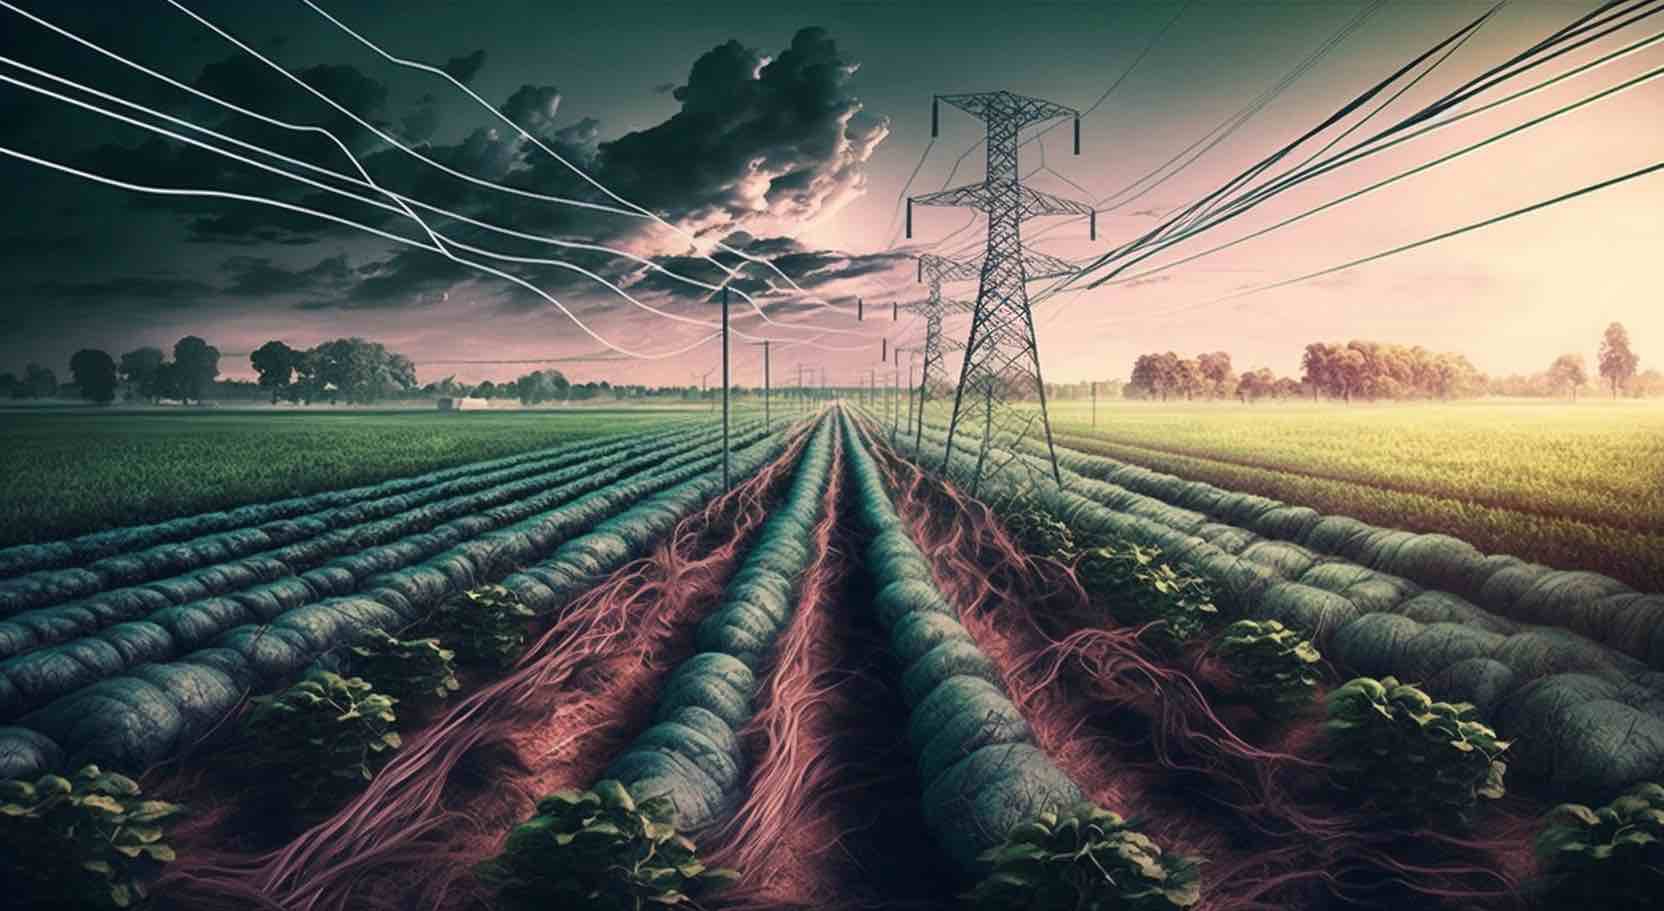 Odling med elektrokultur: En revolutionerande metod för ökad avkastning och hållbarhet?